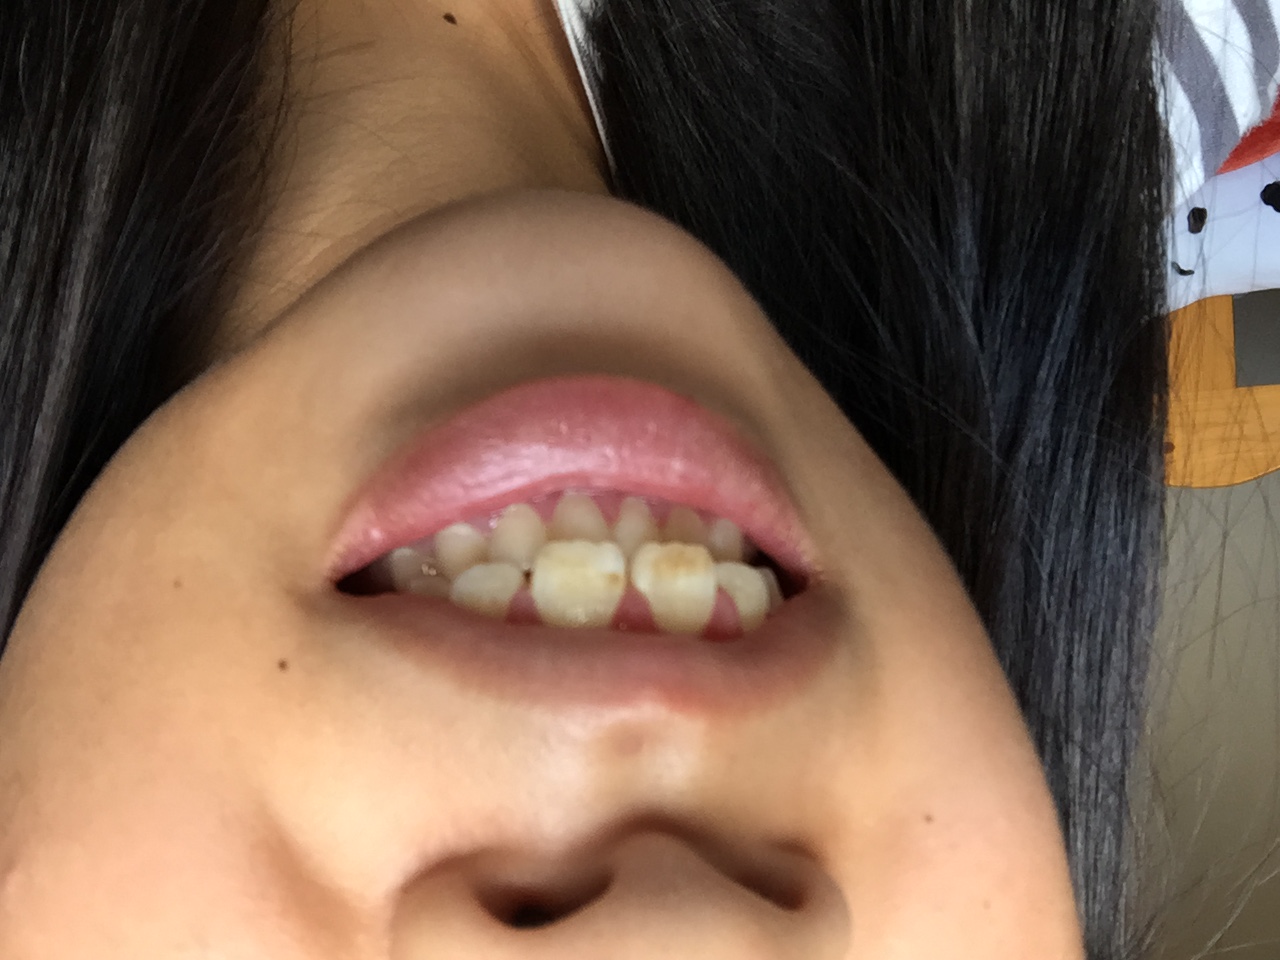 [写真あり] 前歯が黄色いのは治らないのでしょうか？ 歯チャンネル歯科相談室